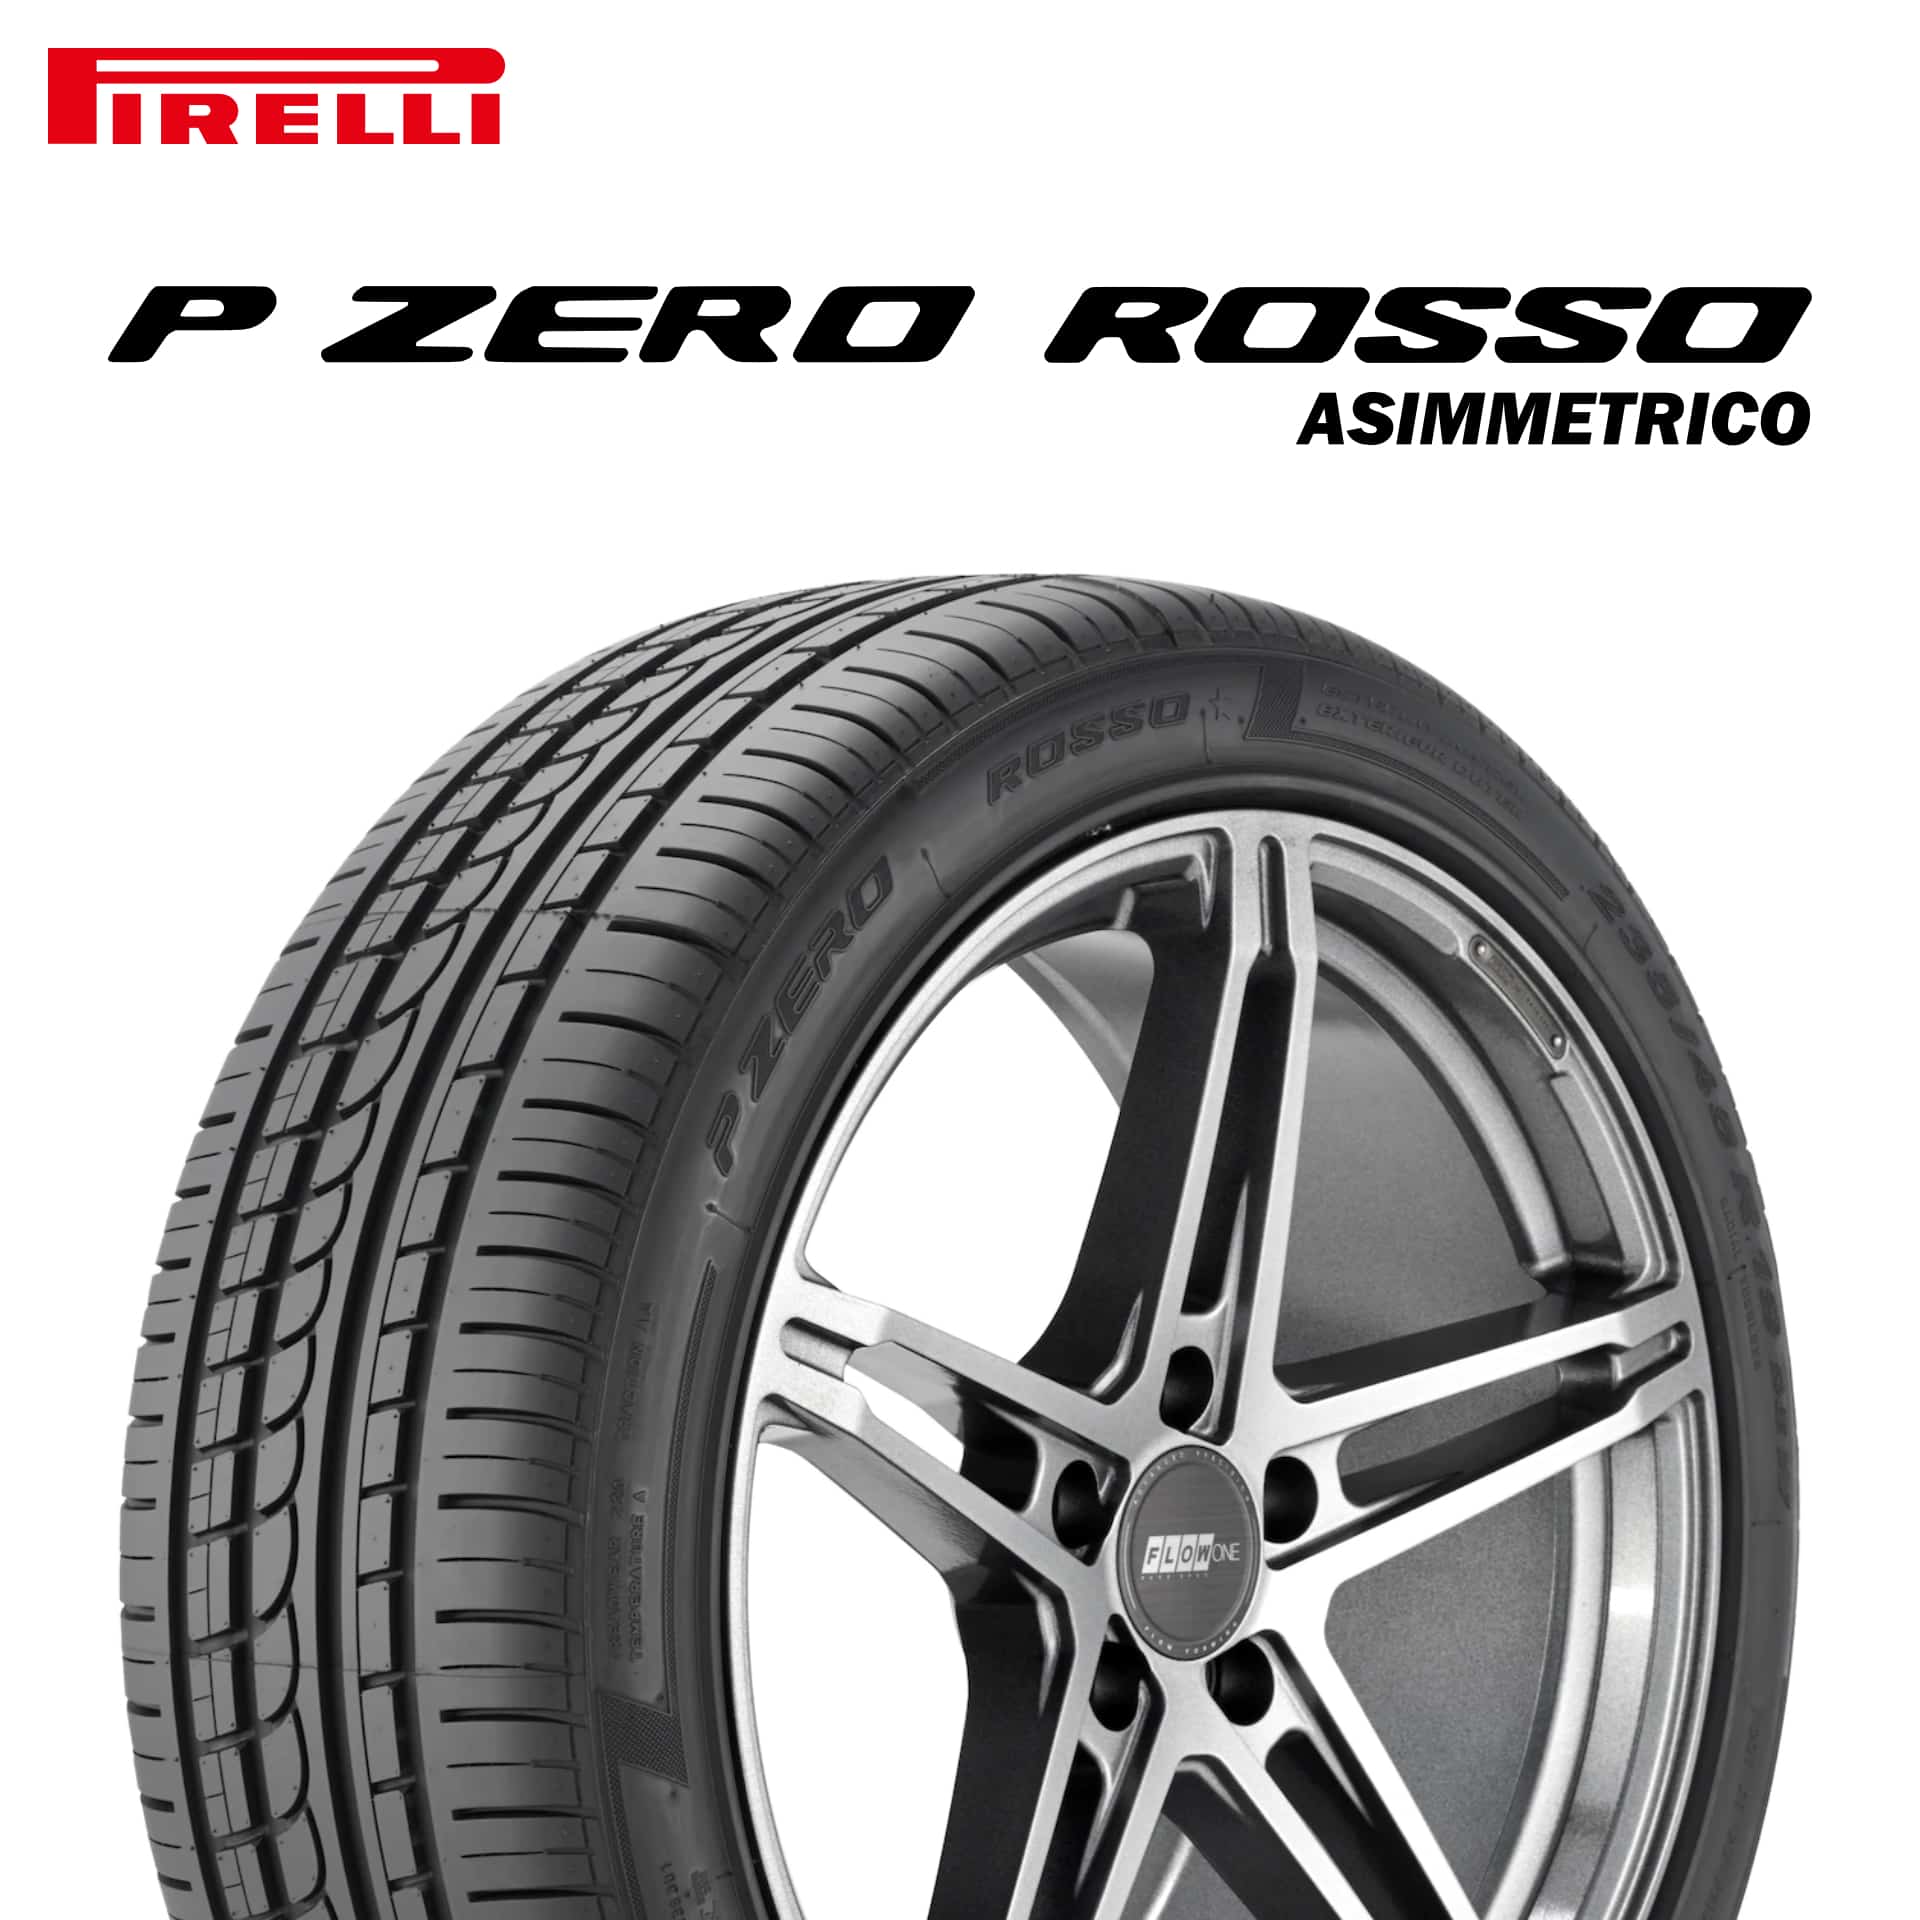 23年製 225/40R18 (88Y) N4 ピレリ P ZERO ROSSO ASIMMETRICO (ピーゼロ ロッソ アシンメトリコ) ポルシェ承認タイヤ 18インチ 新品